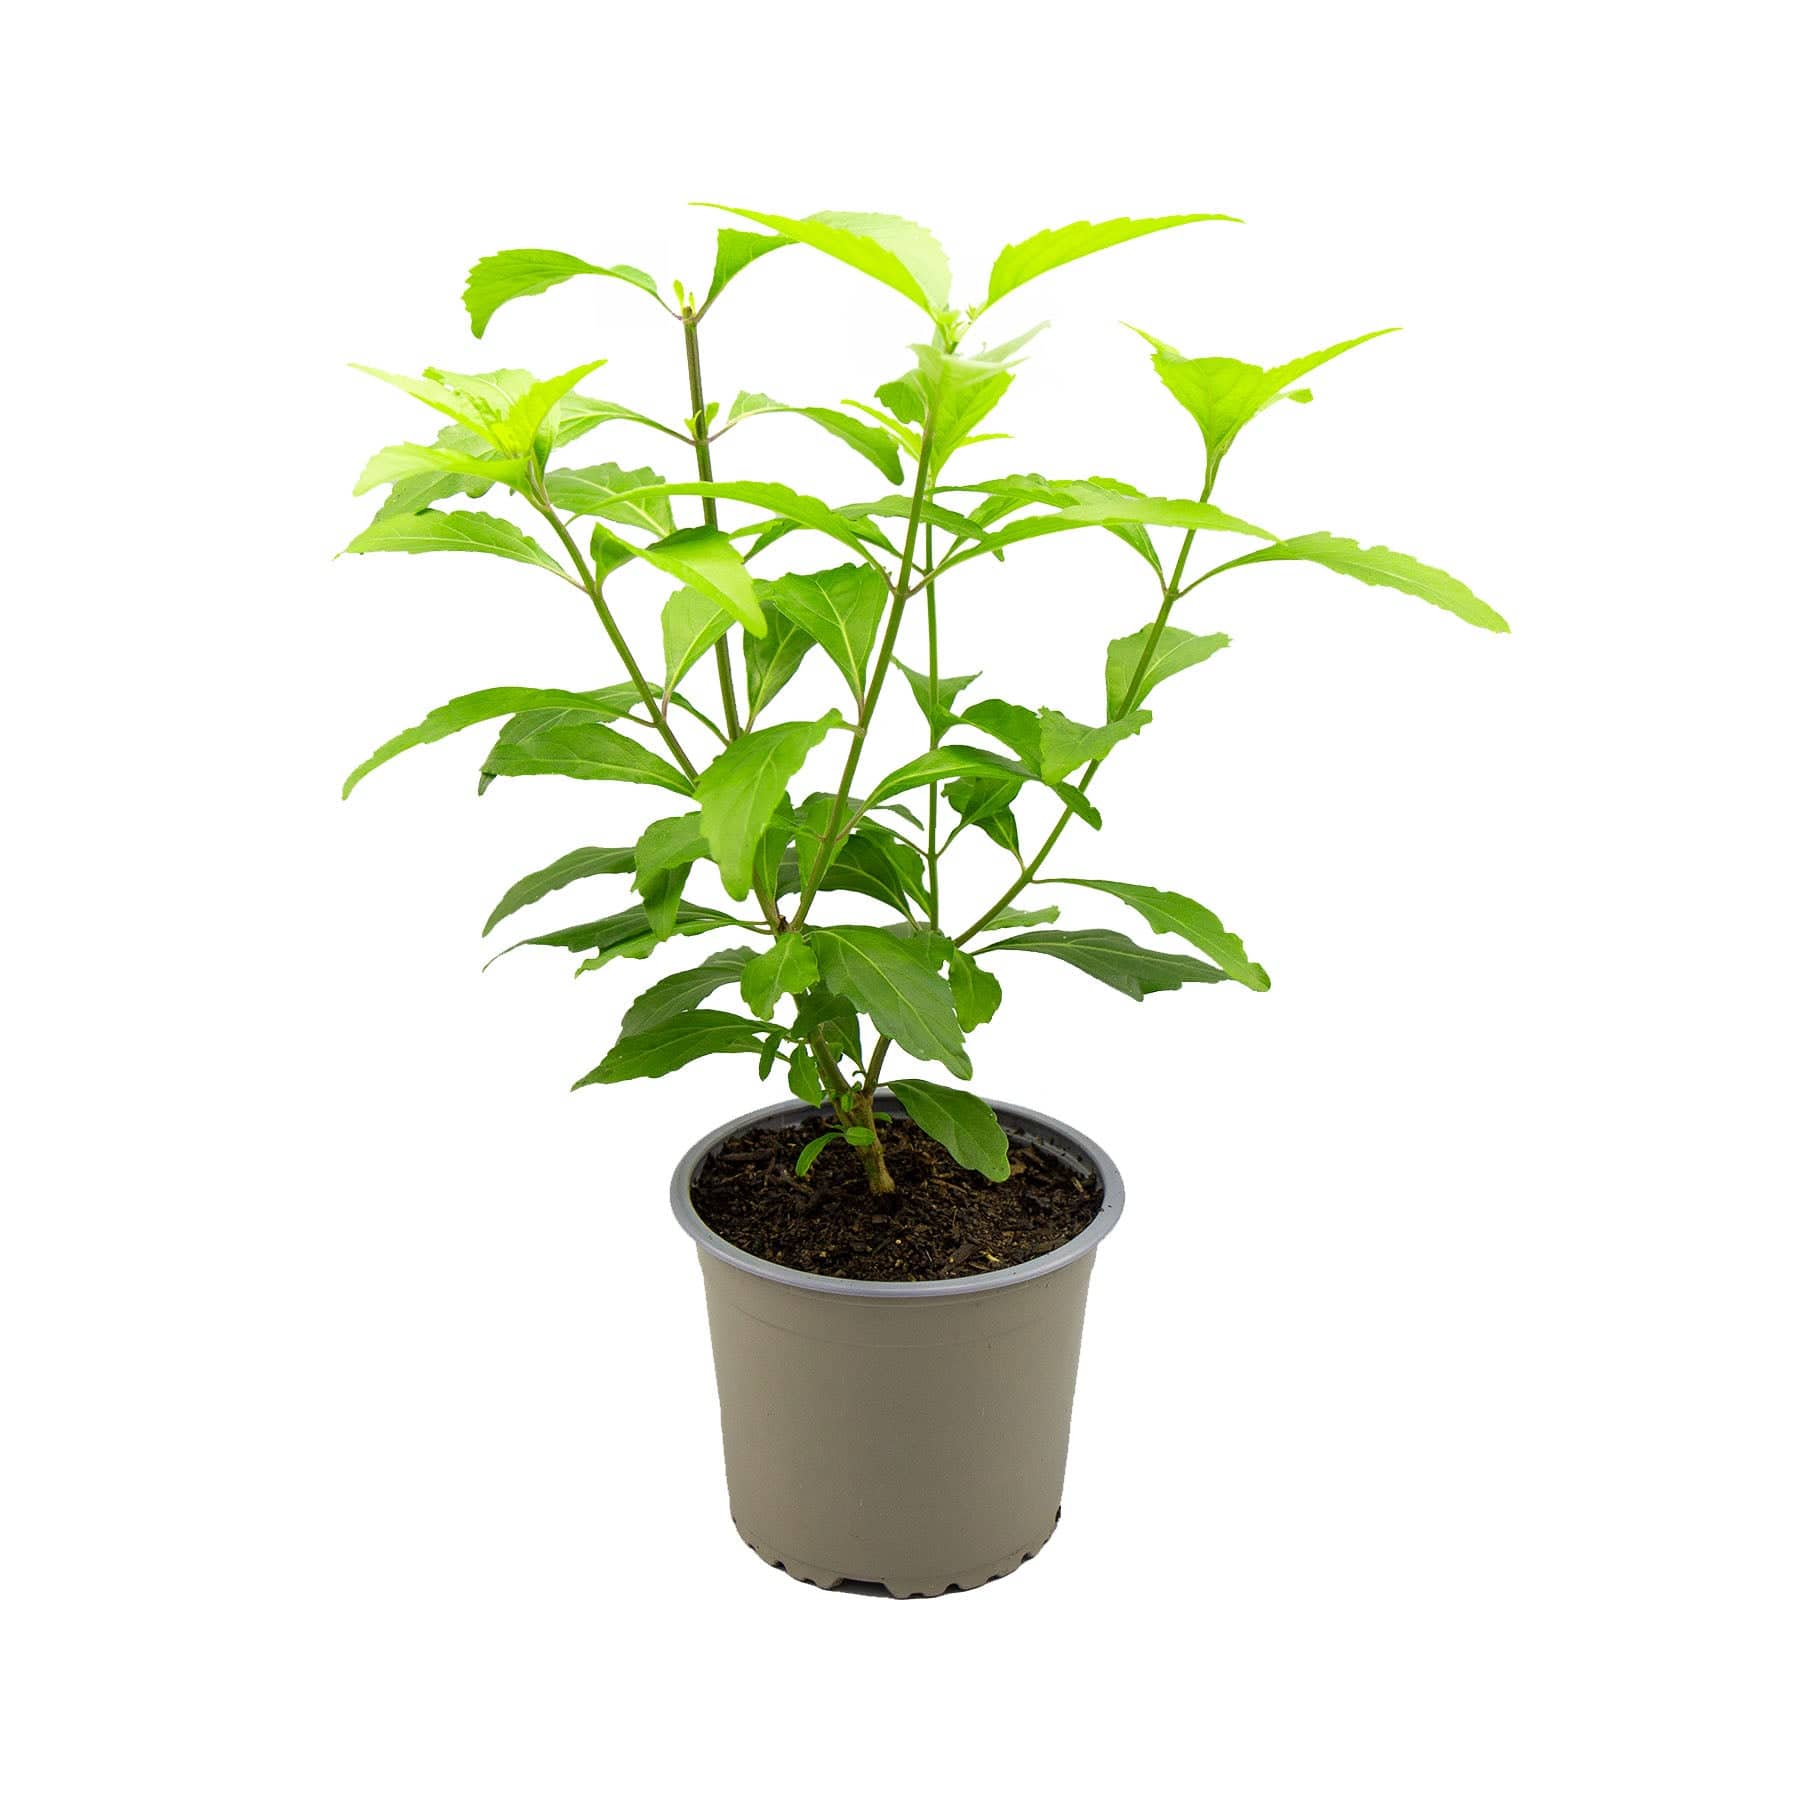 Java tea plant - Eden-grown